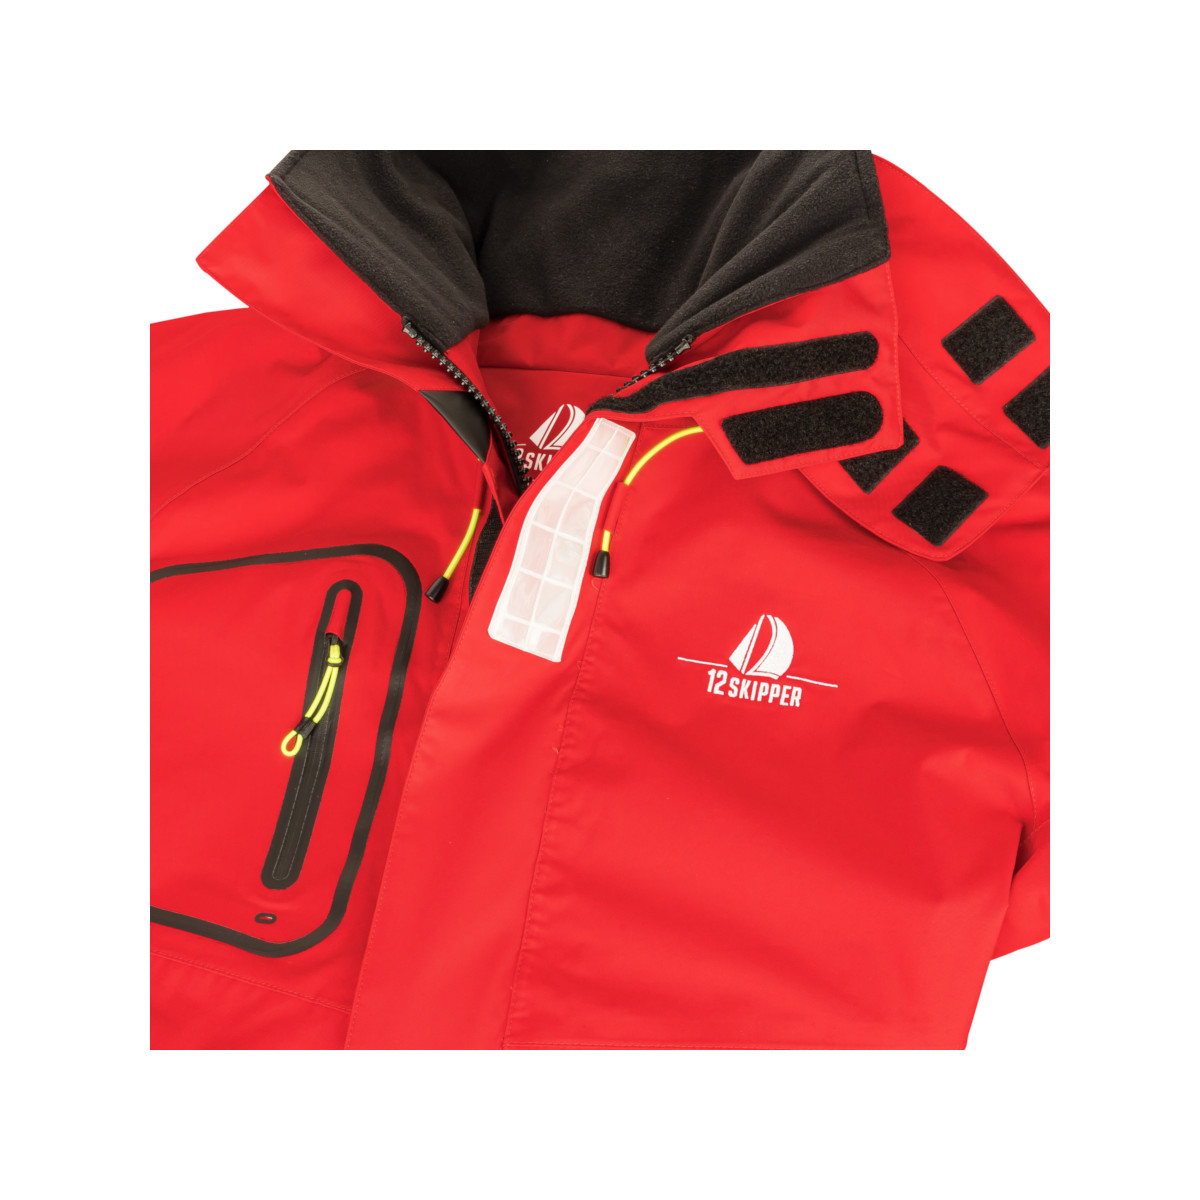 12skipper Magellan veste de quart hauturière, unisexe - rouge, taille XS